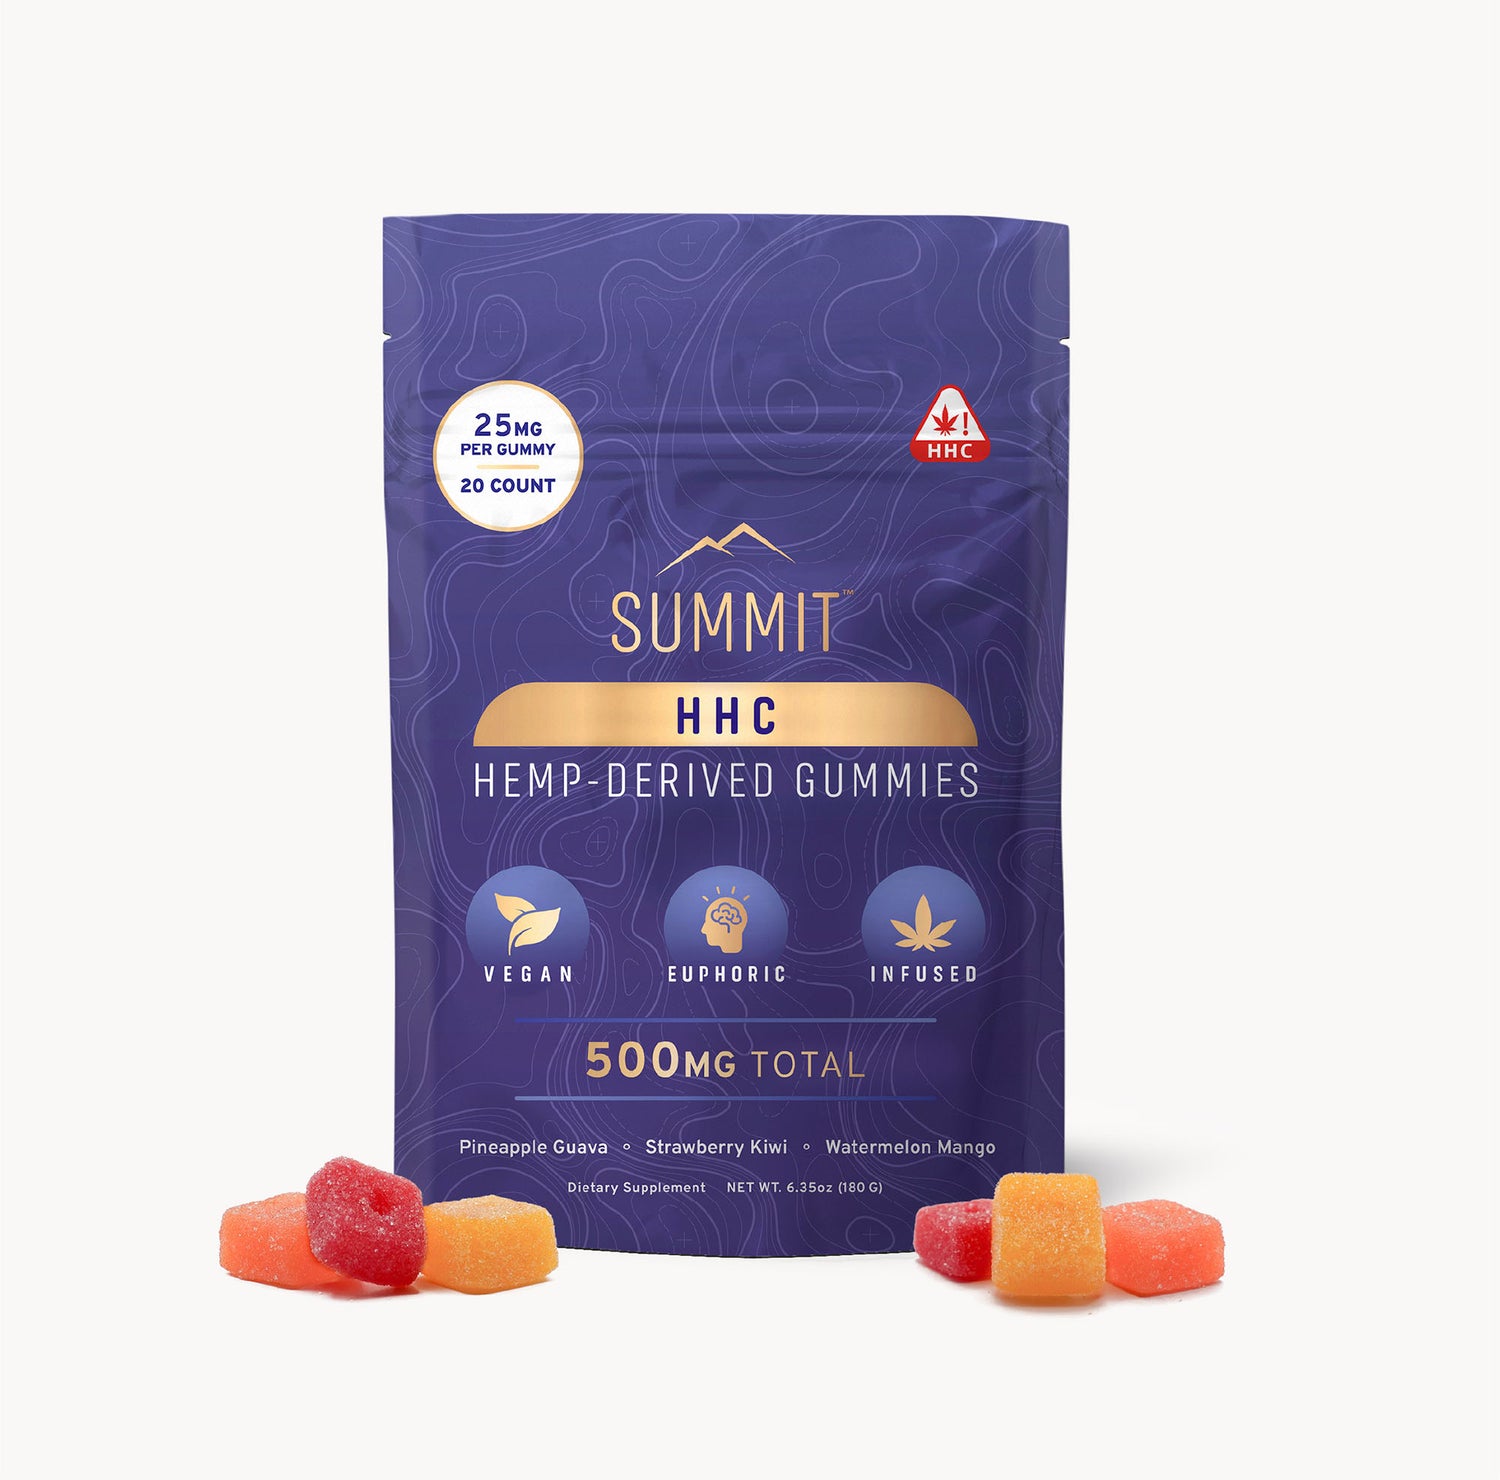 25mg HHC Gummies - 20ct